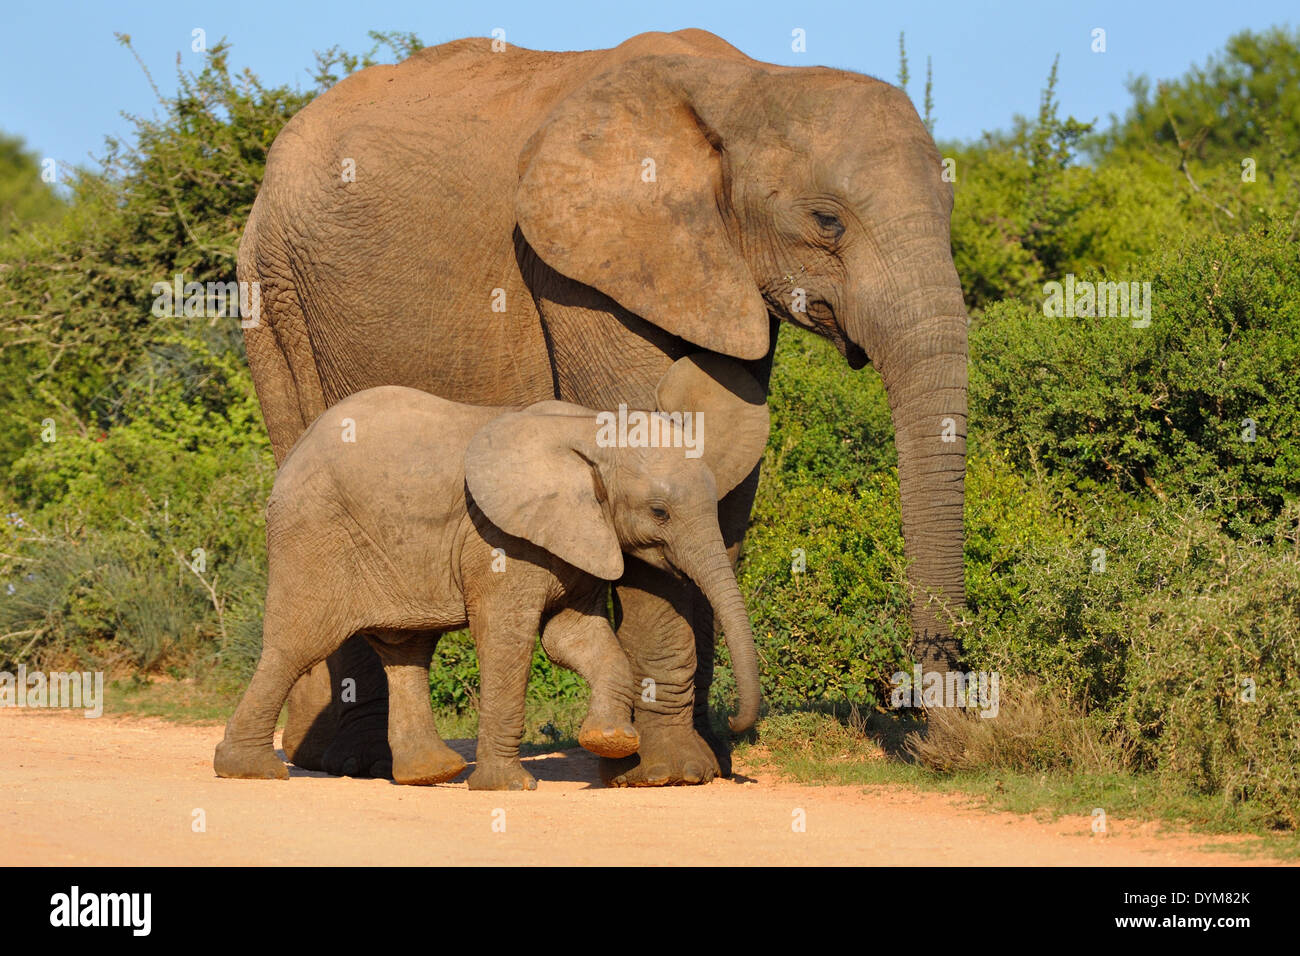 Les éléphants d'Afrique (Loxodonta africana), mère et bébé l'alimentation s'y frottant, Addo Elephant National Park, Afrique du Sud Banque D'Images